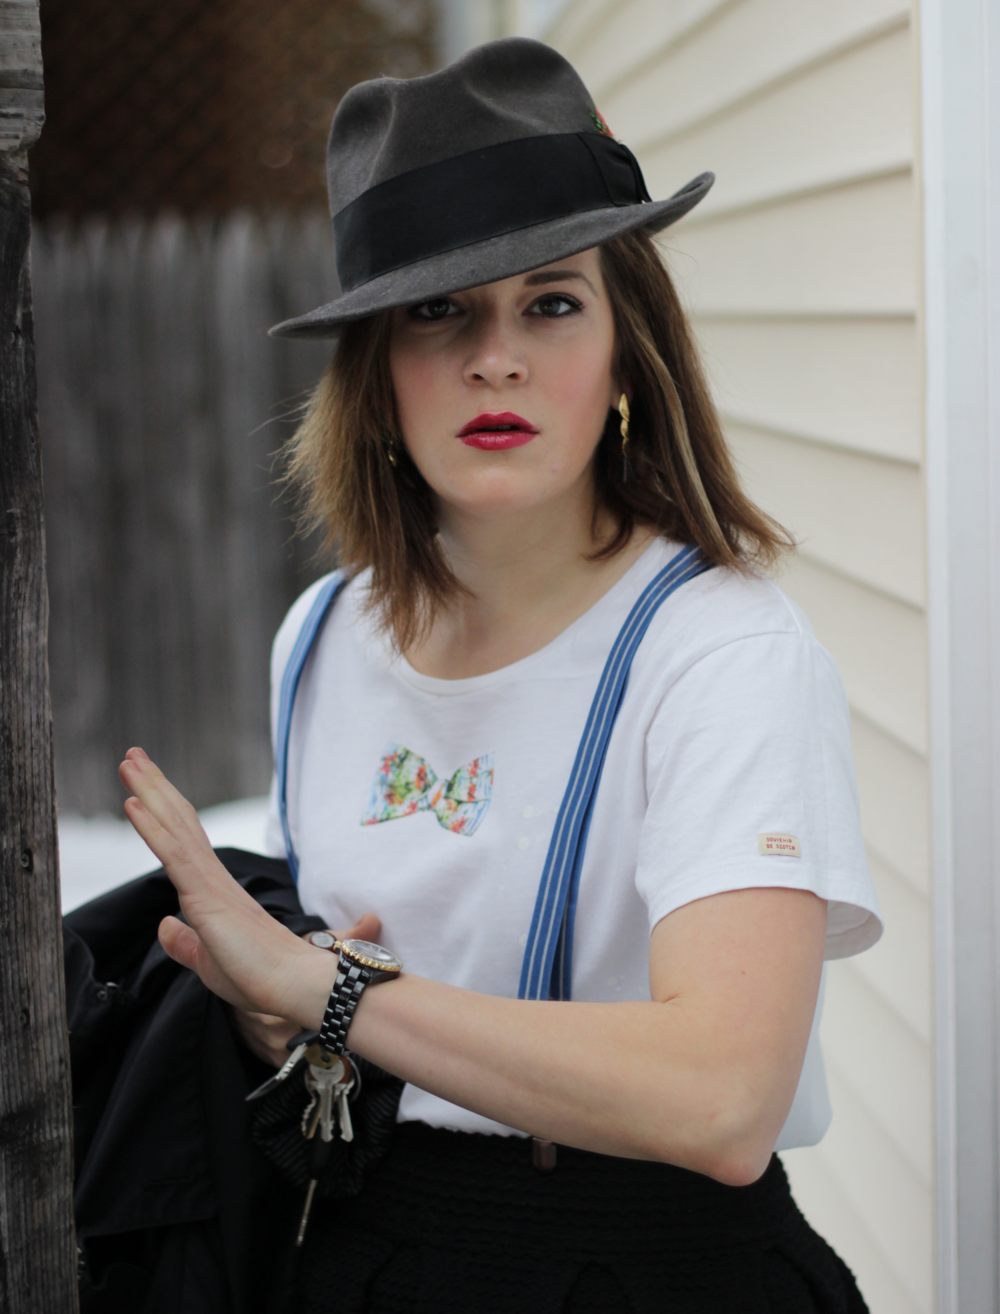 Menswear for women - suspenders, hat, bowtie - on Belle Meets World blog